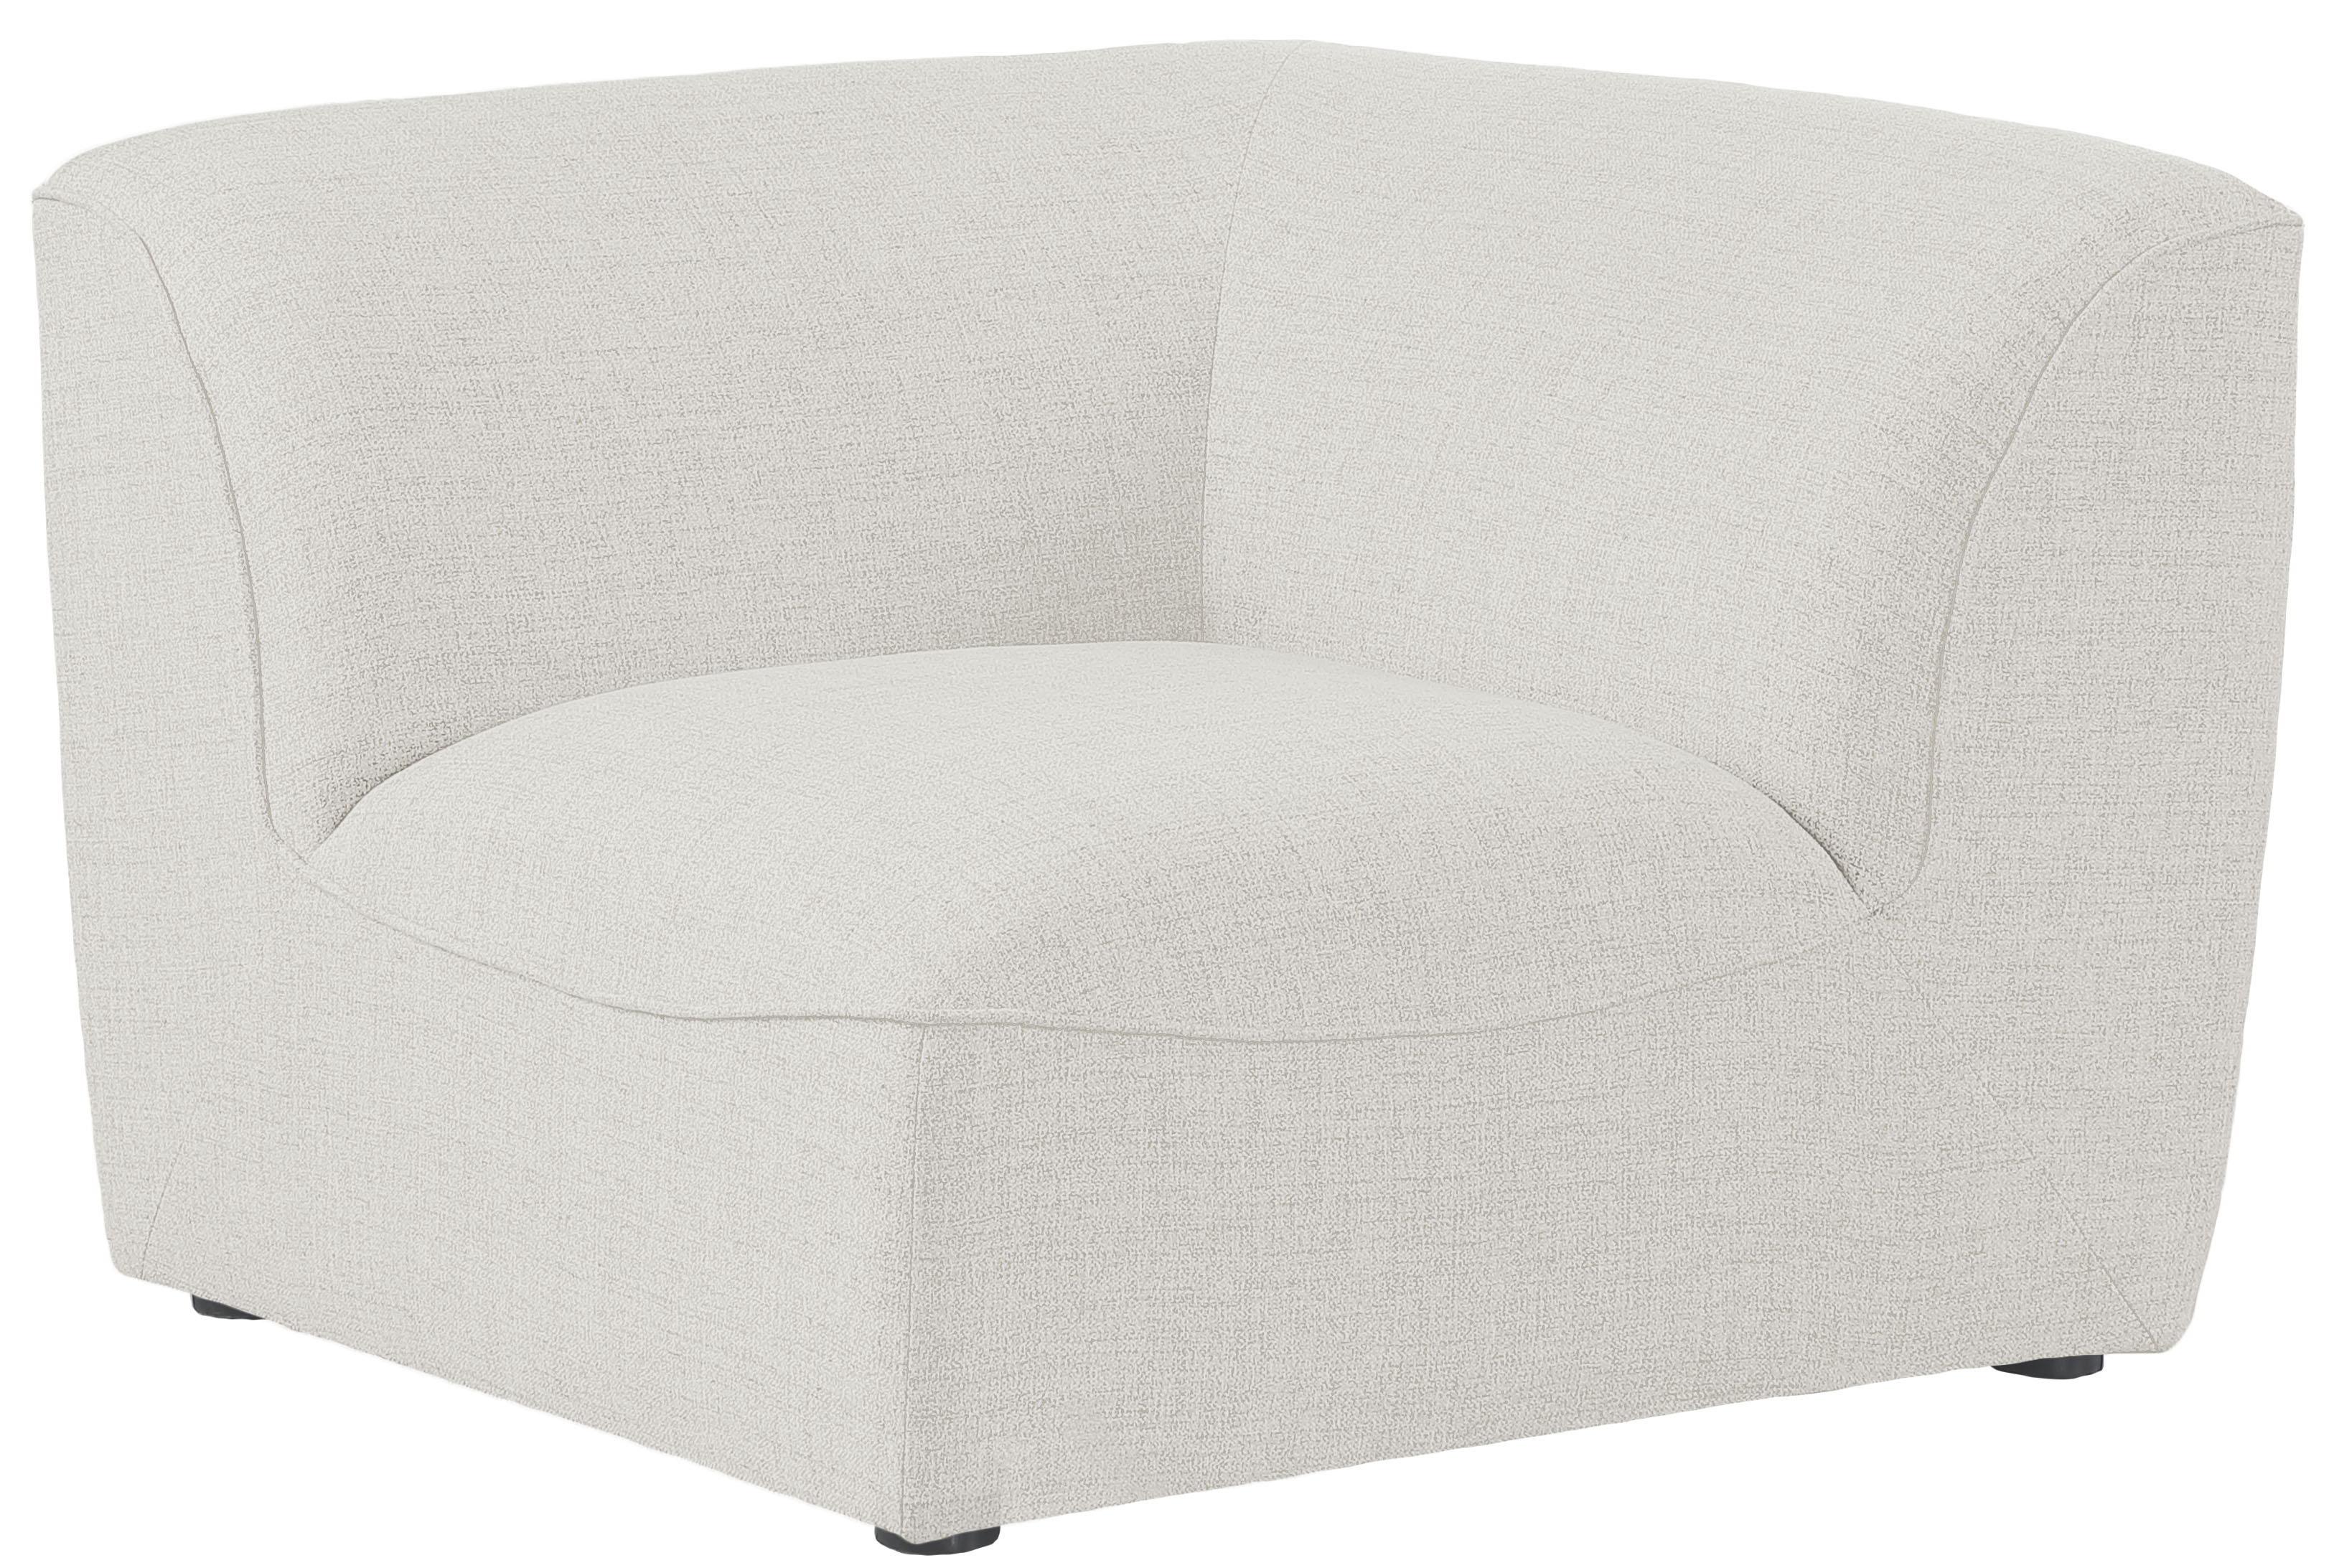 Meridian Furniture - Miramar - Corner Chair - Cream - 5th Avenue Furniture